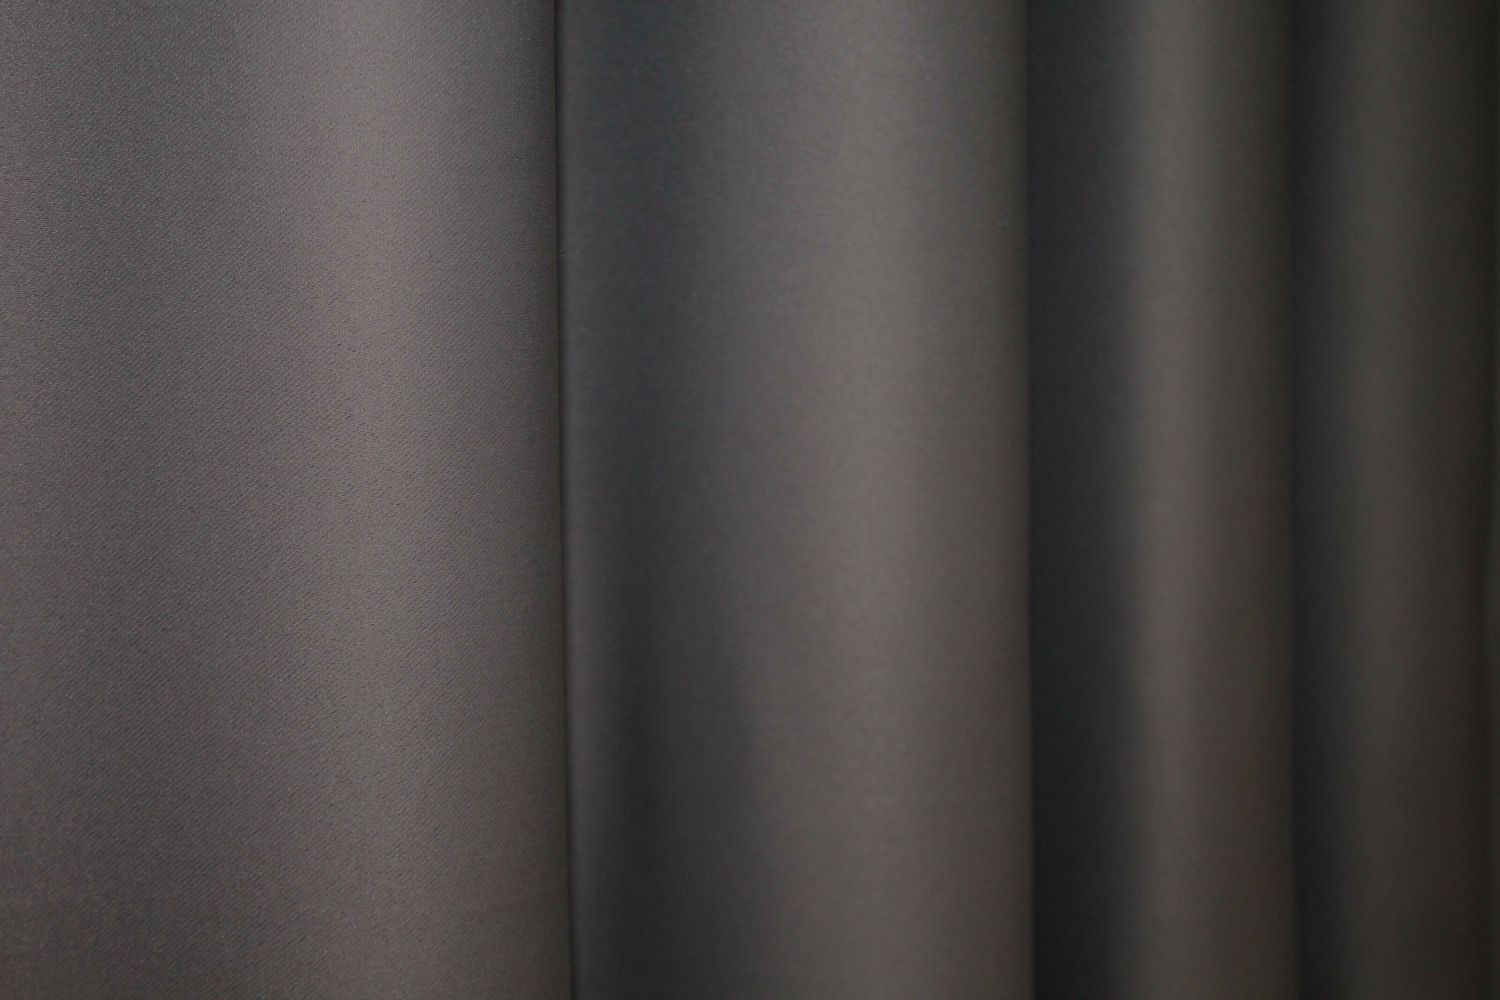 Комплект штор из ткани блэкаут "Fusion Dimout" цвет темное какао 833ш, Темное какао, Комплект штор (2шт. 1,0х2,7м.), Классические, Без ламбрекена, Длинные, 1 м., 2,7 м., 100, 270, 1 - 2 м., В комплекте 2 шт., Тесьма